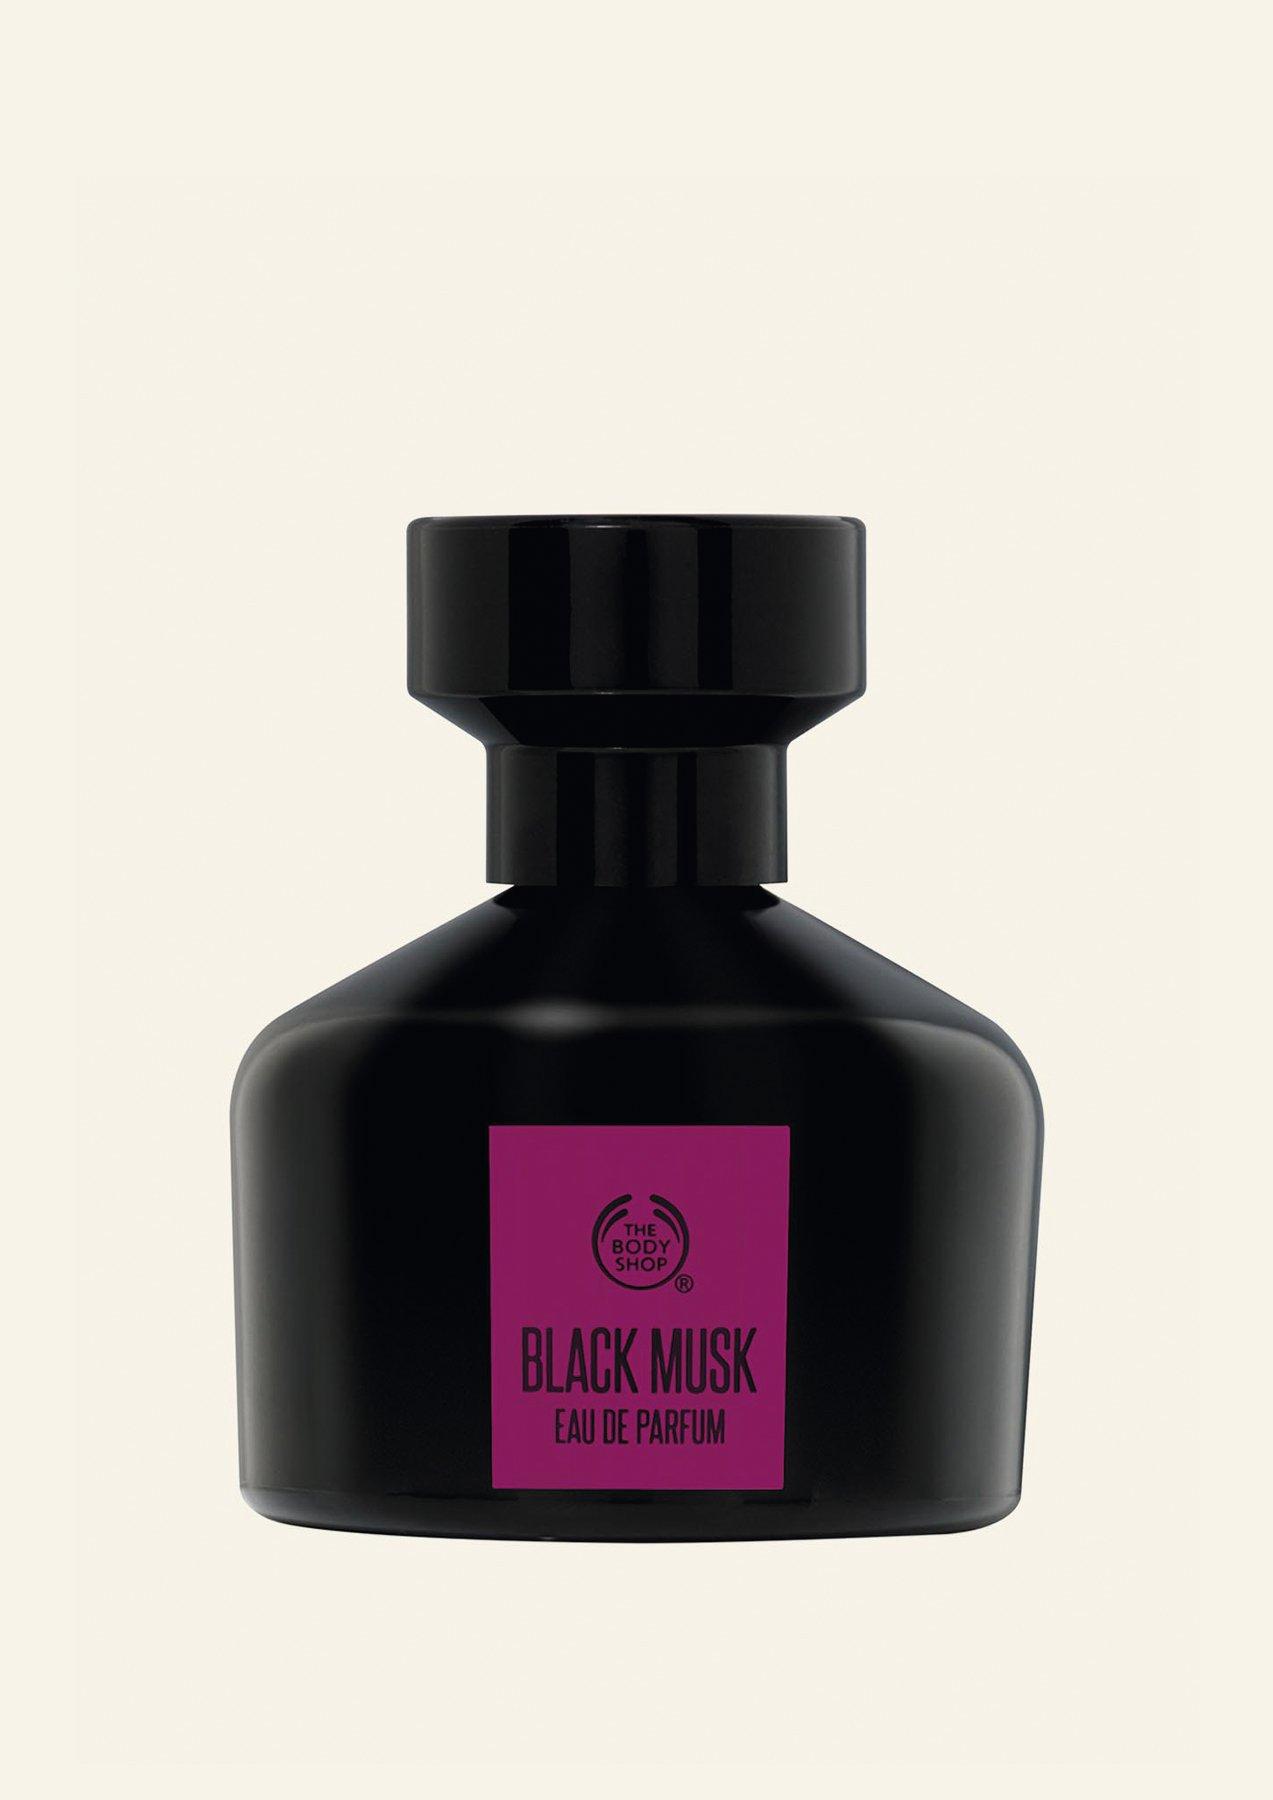 Black Musk Eau de Parfum | The Body Shop